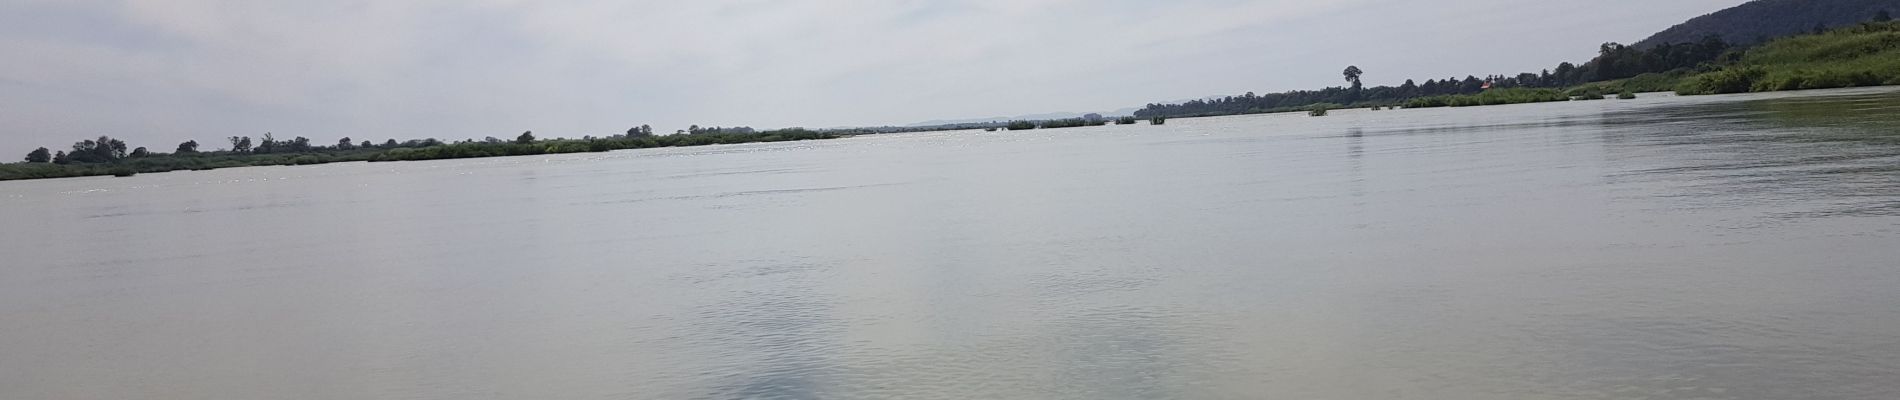 Randonnée Bateau à moteur ທົ່ງ - Mekong cruise - Photo